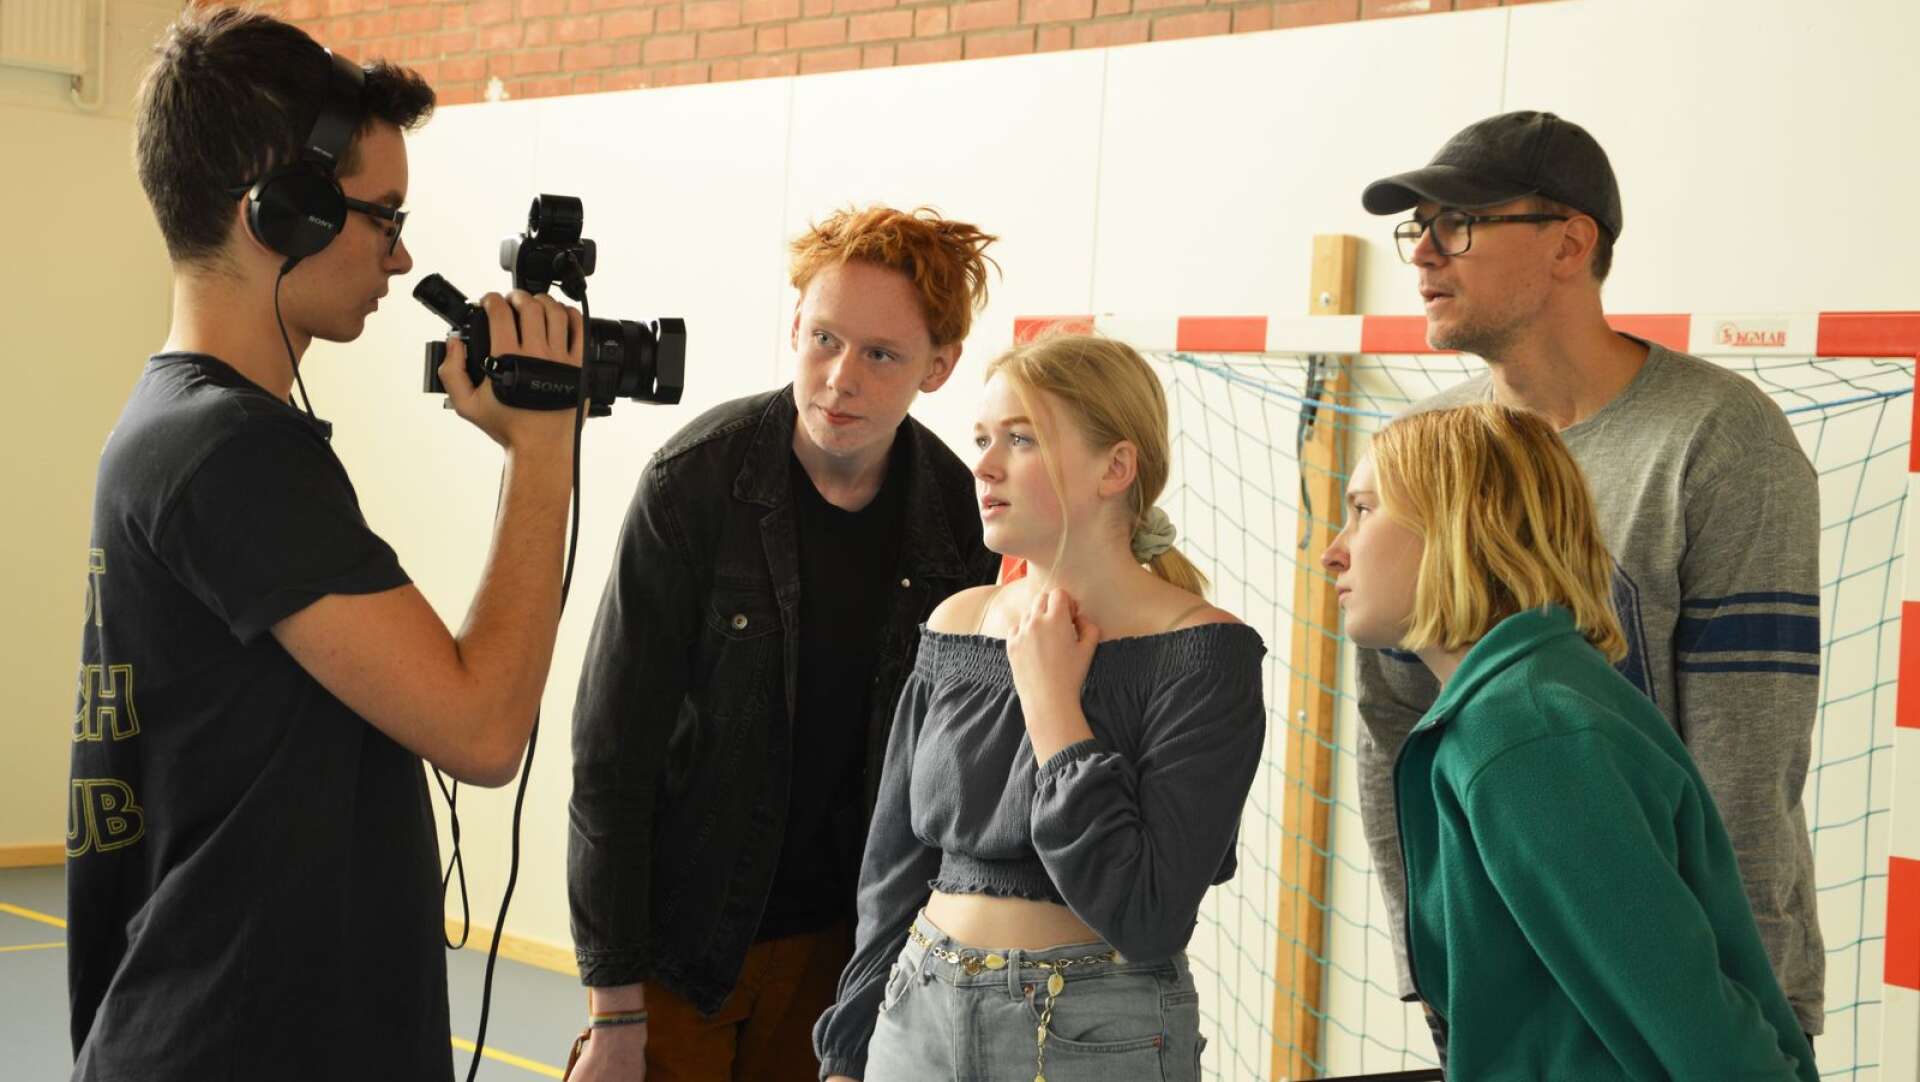 Här är de fyra manusförfattarna från Åmål. Från vänster Anton Larsson, Isac Fridlund, Jonna Mattsson, Elma Andreasson tillsammans med sin handledare Erik Lundin. Här ser de på filmat material via kameraskärm.